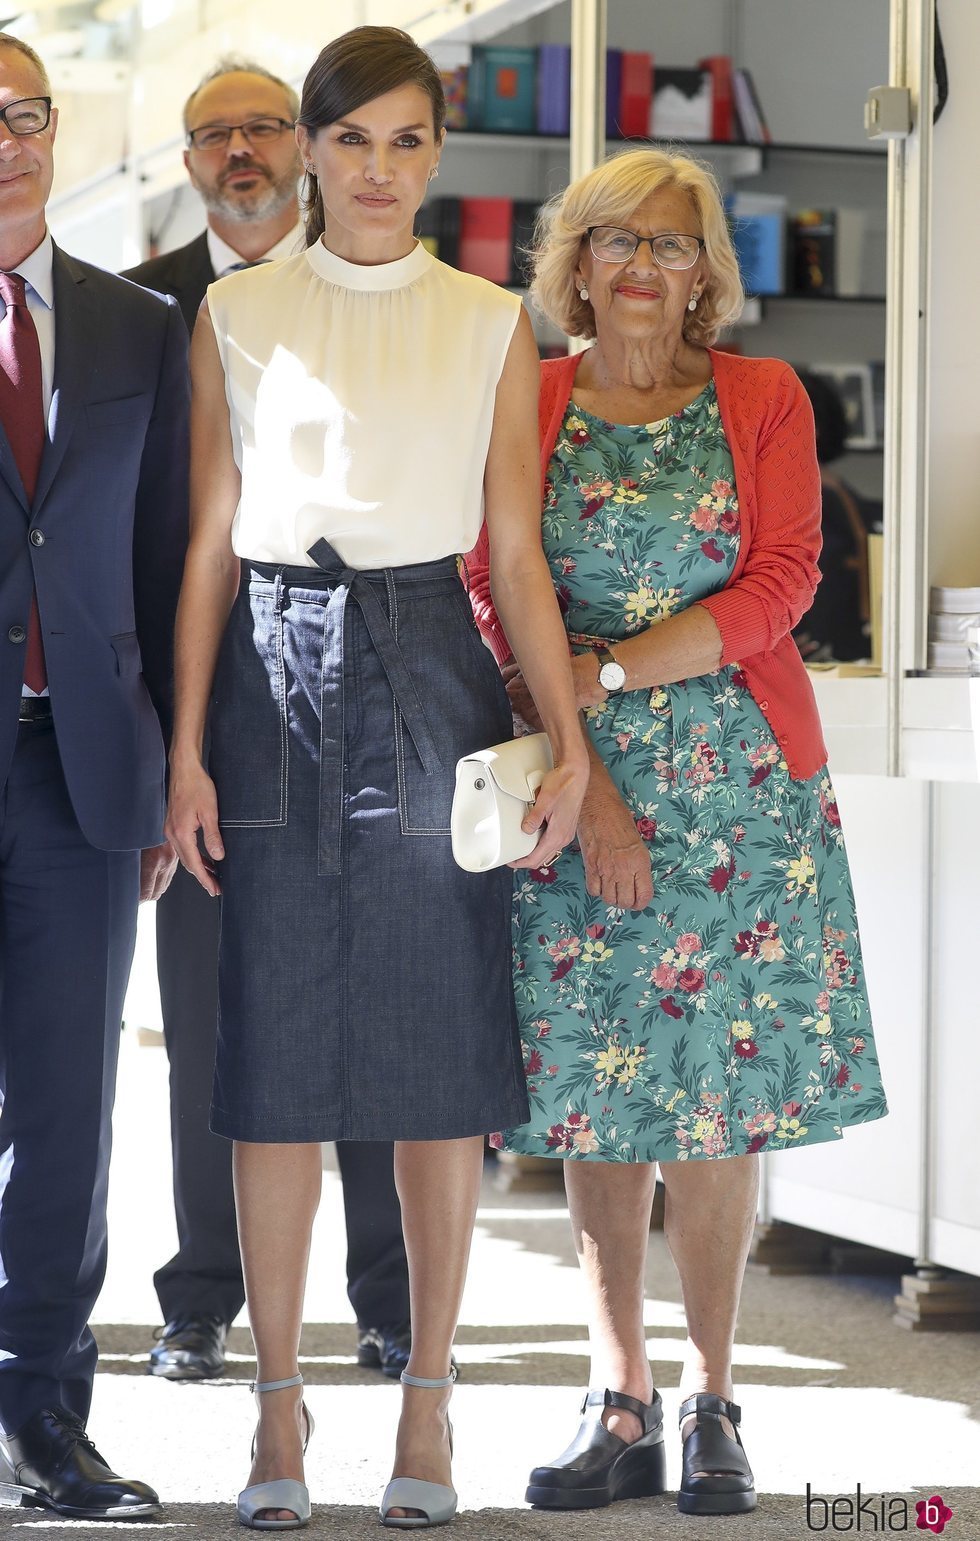 La Reina Letizia y Manuela Carmena en la inauguración de la Feria del Libro de Madrid 2019